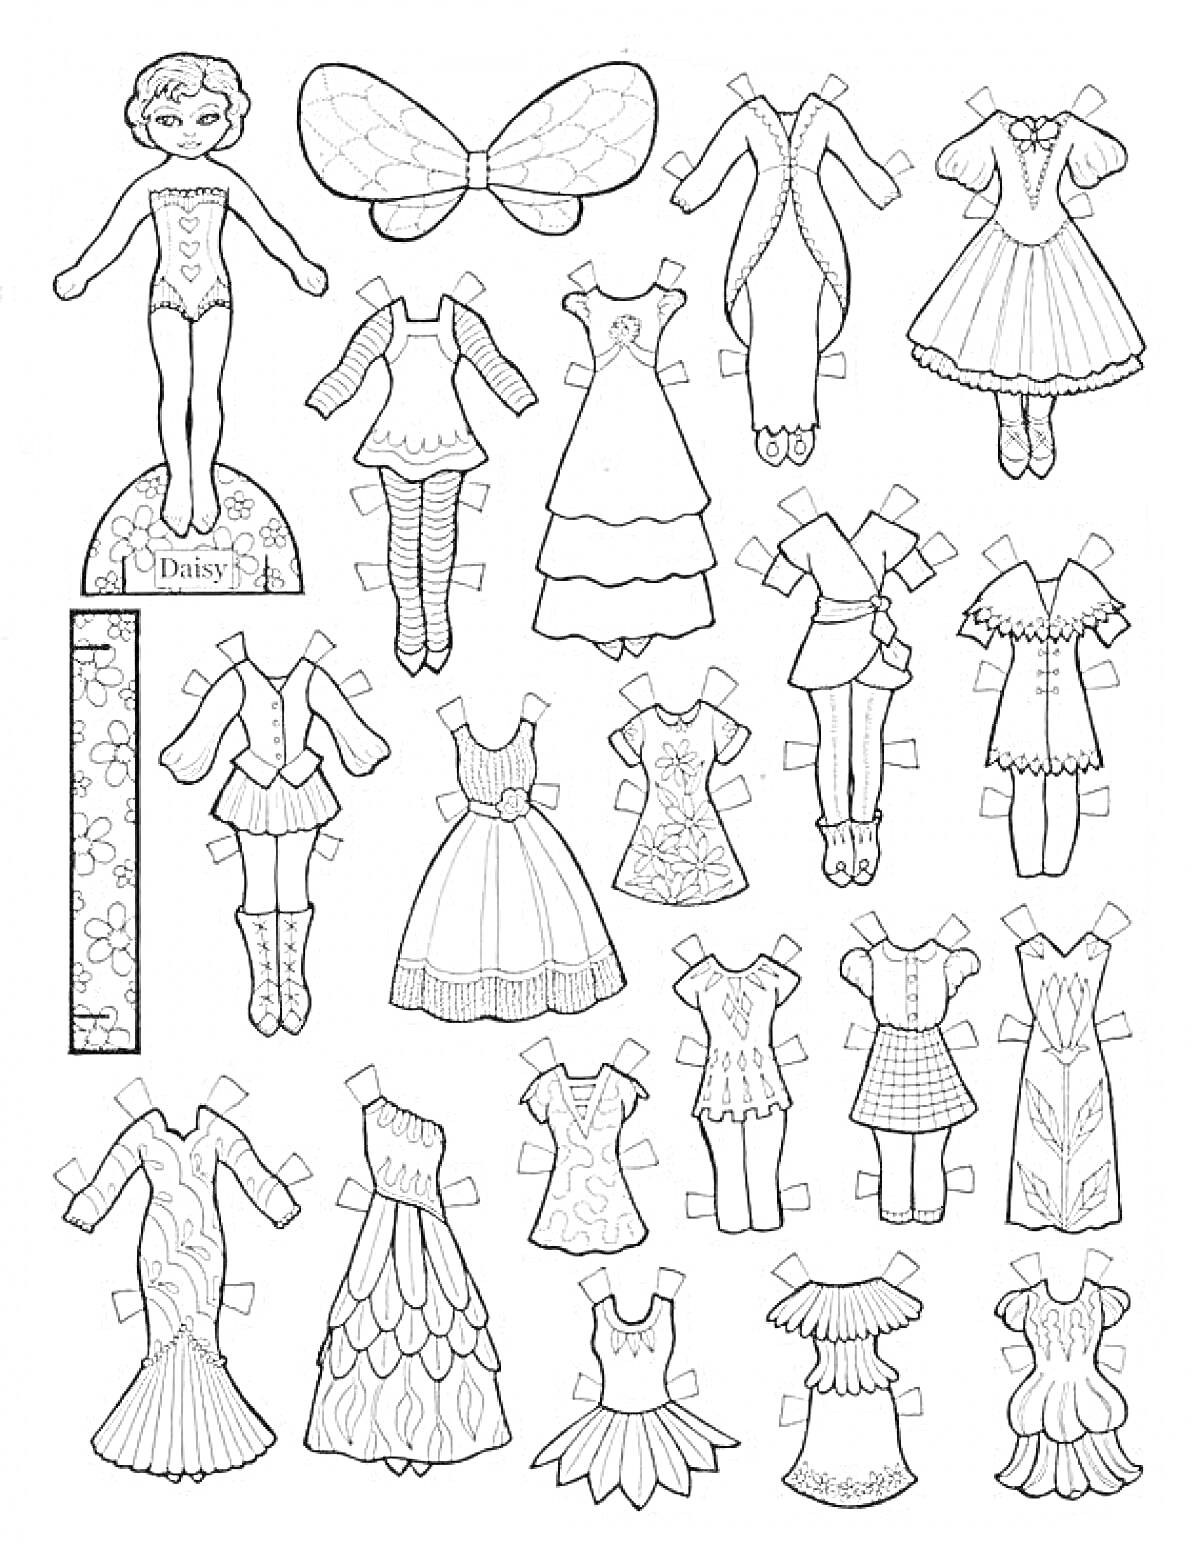 Раскраска Бумажная кукла с комплектом одежды, аксессуаров и крыльями